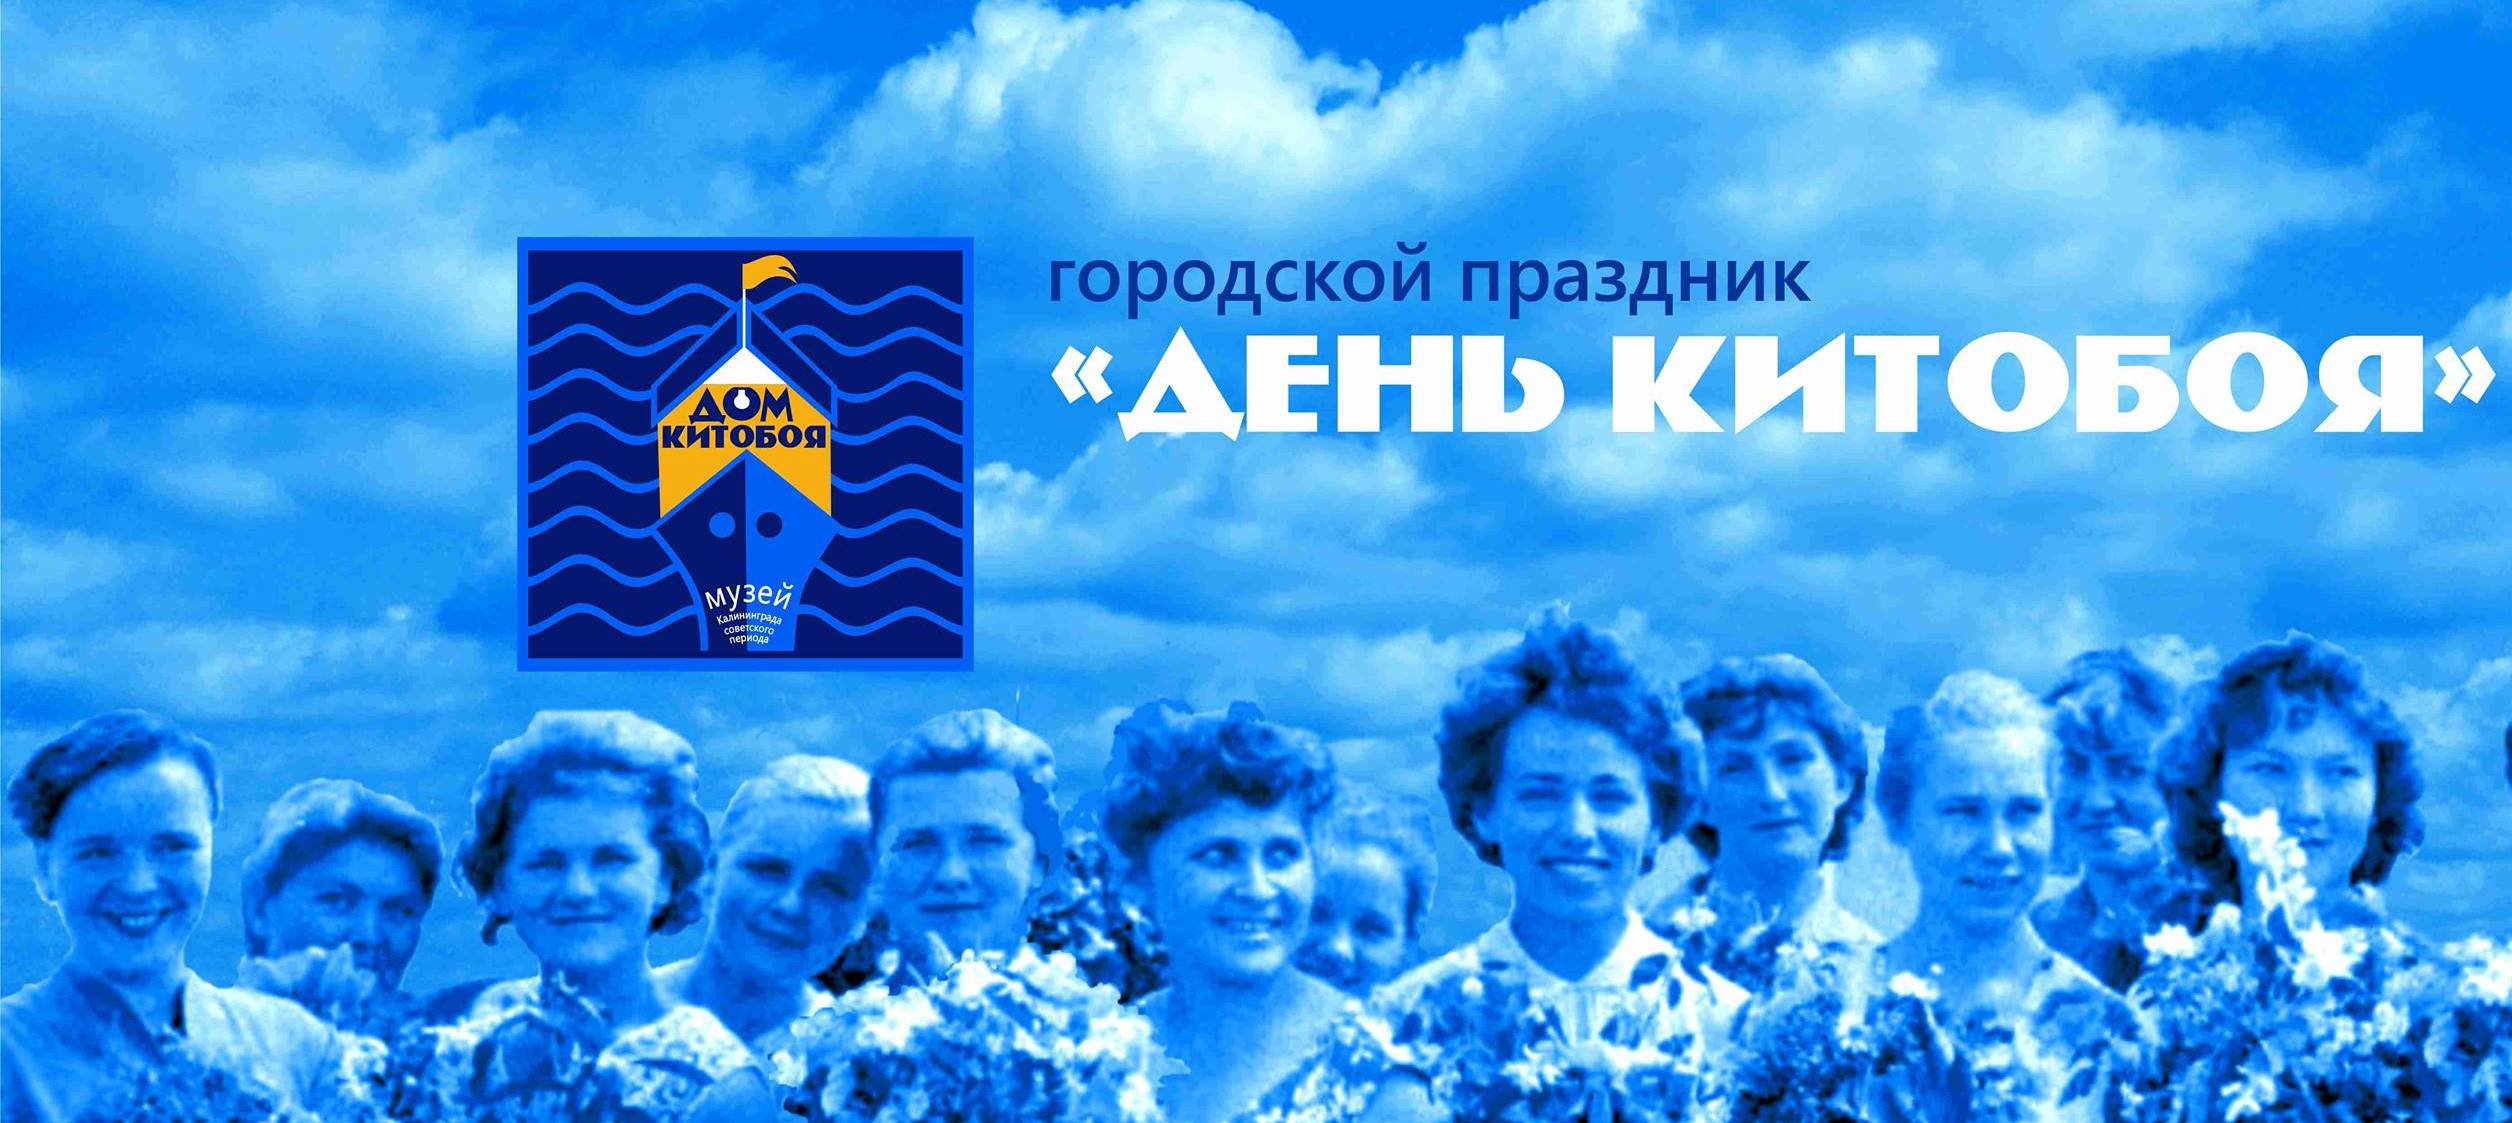 Зачем в Калининграде празднуют День китобоя